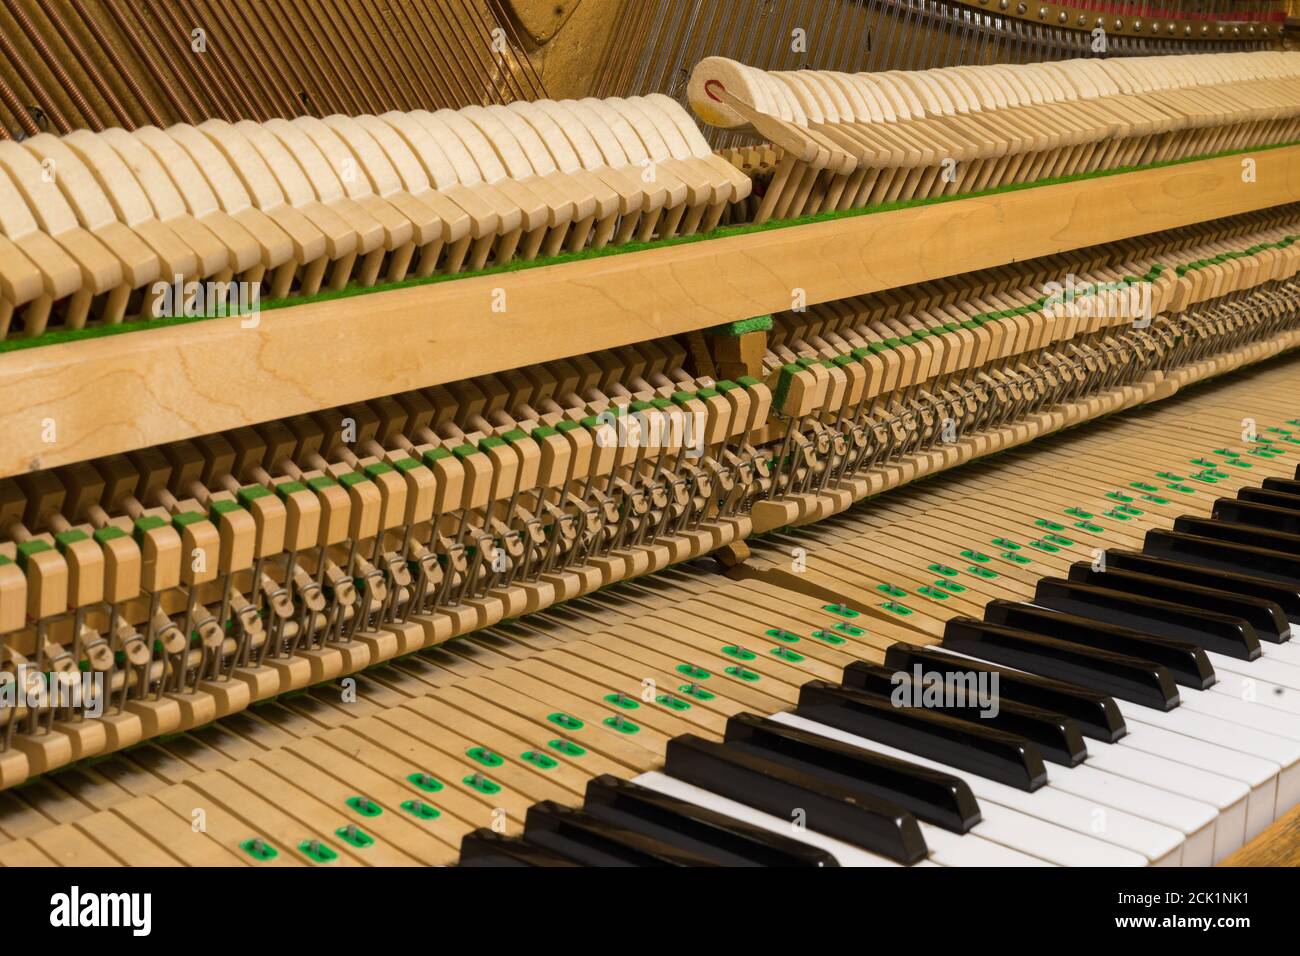 Le lavorazioni interne di un pianoforte verticale che mostra le corde e i martelli all'interno. Foto Stock